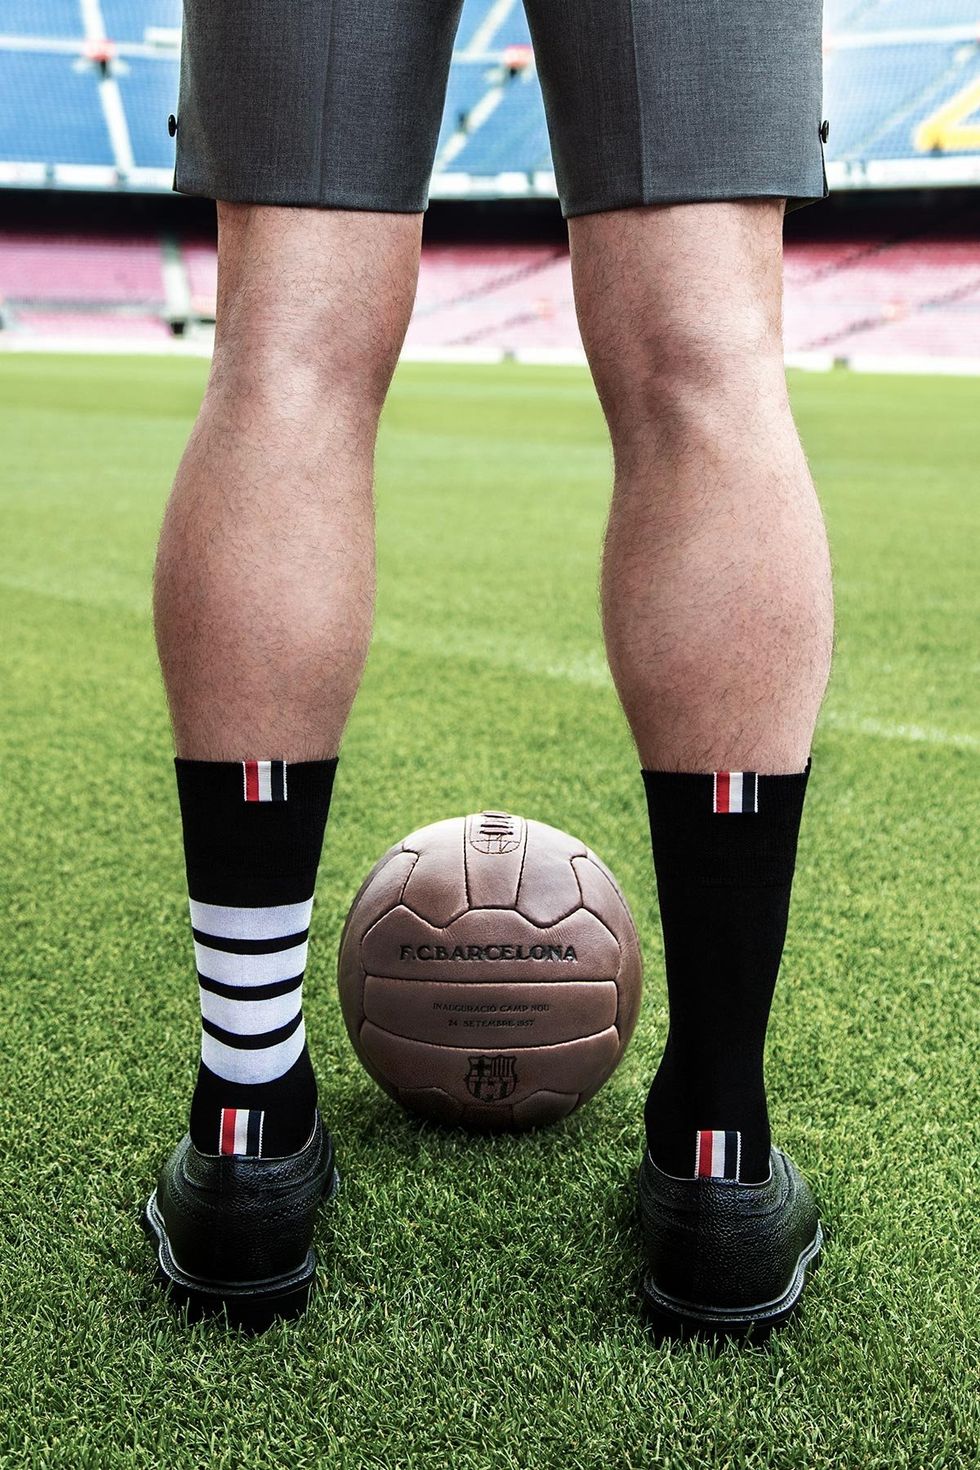 Human leg, Leg, Football, Calf, Grass, Sports equipment, Ball, Knee, Player, Soccer ball, 